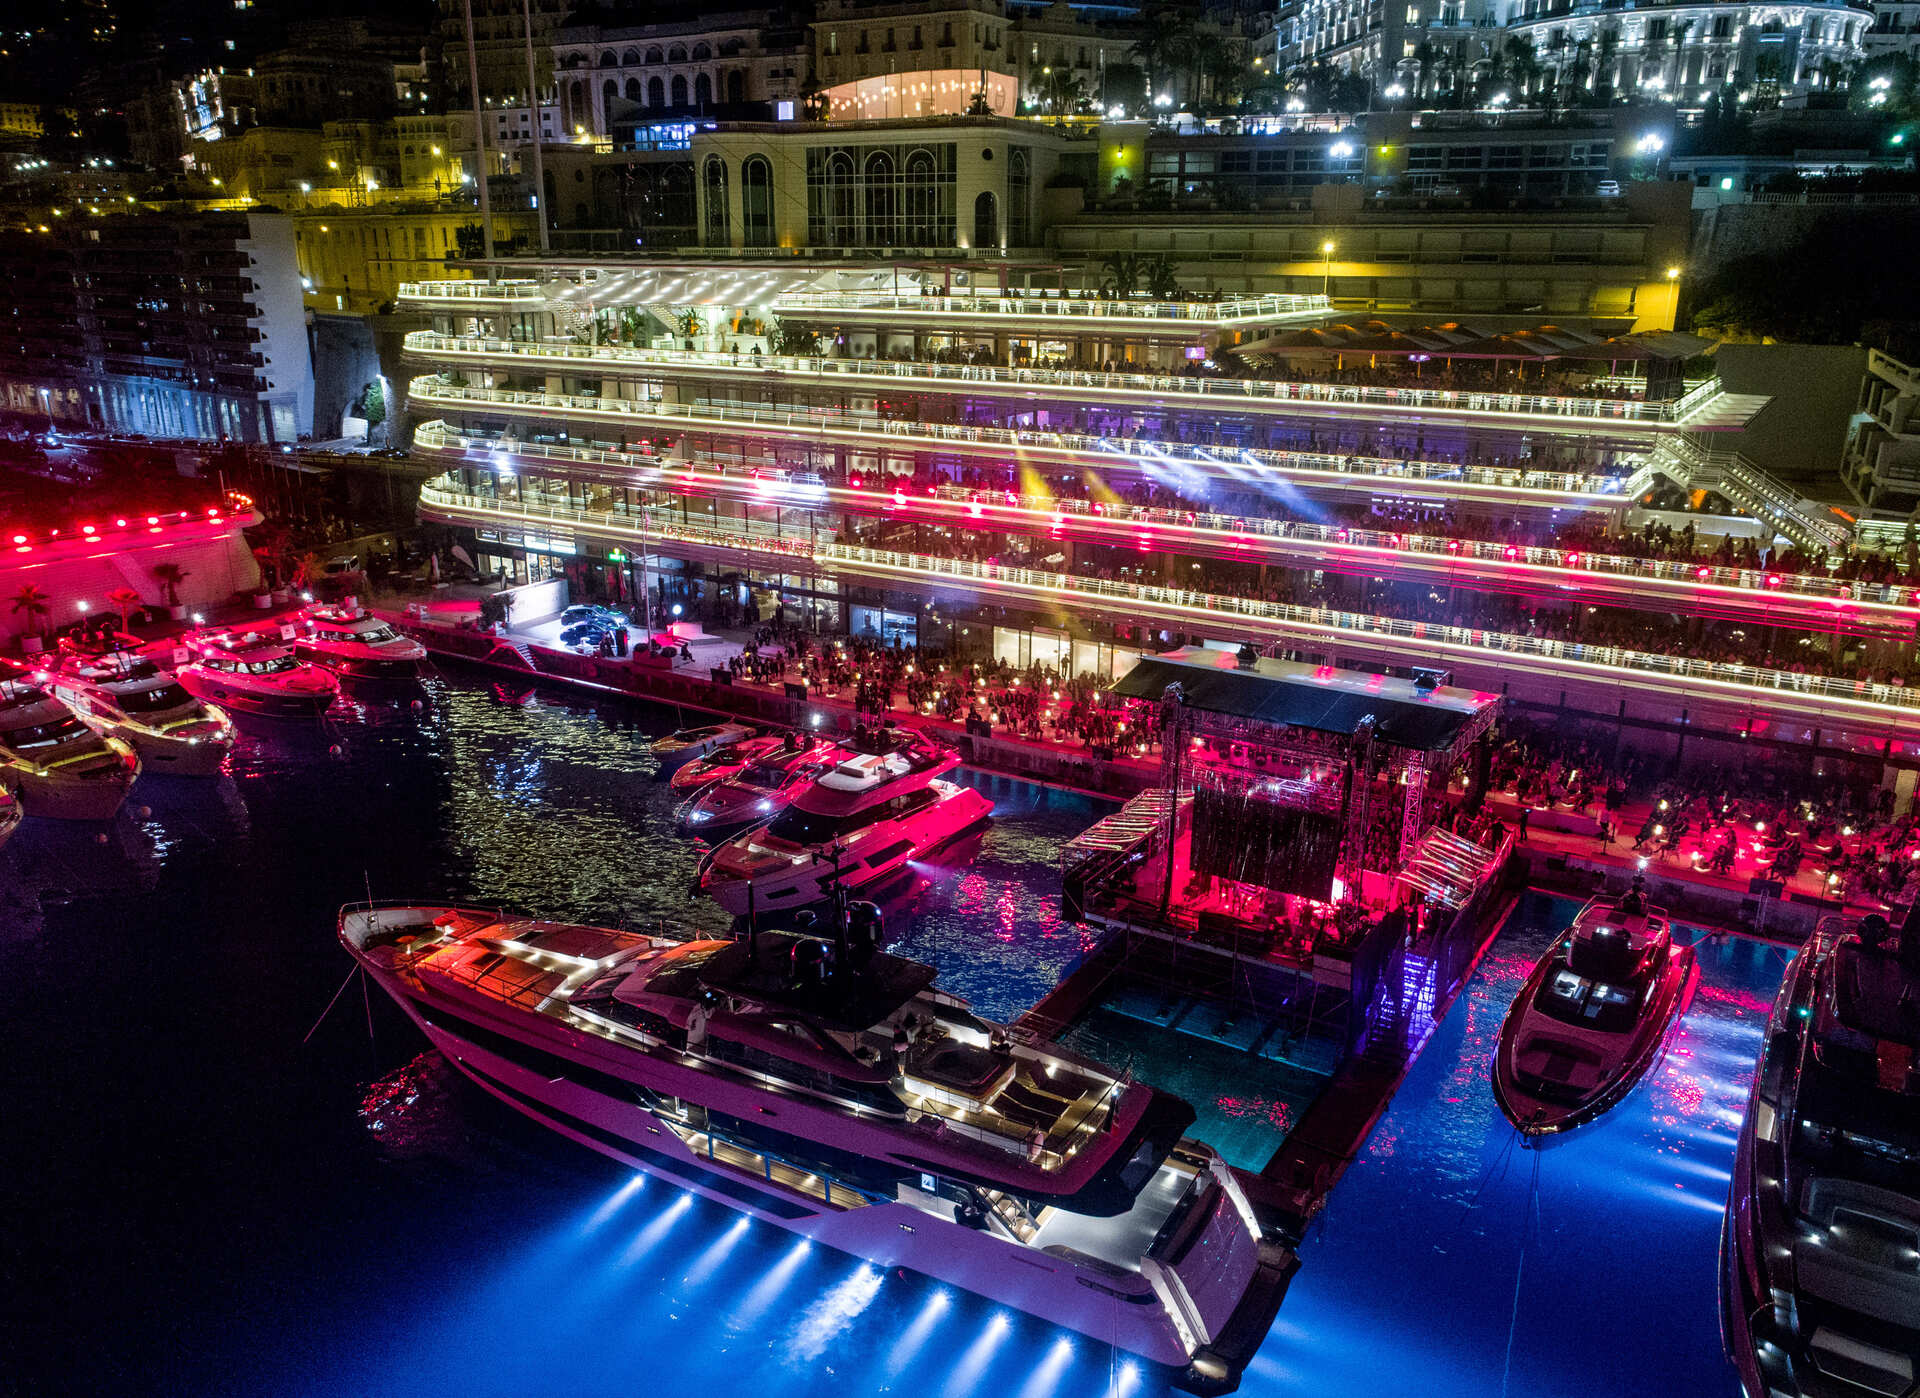 Приглашаем на закрытый показ яхт Ferretti Group в Королевский яхт-клуб Монако